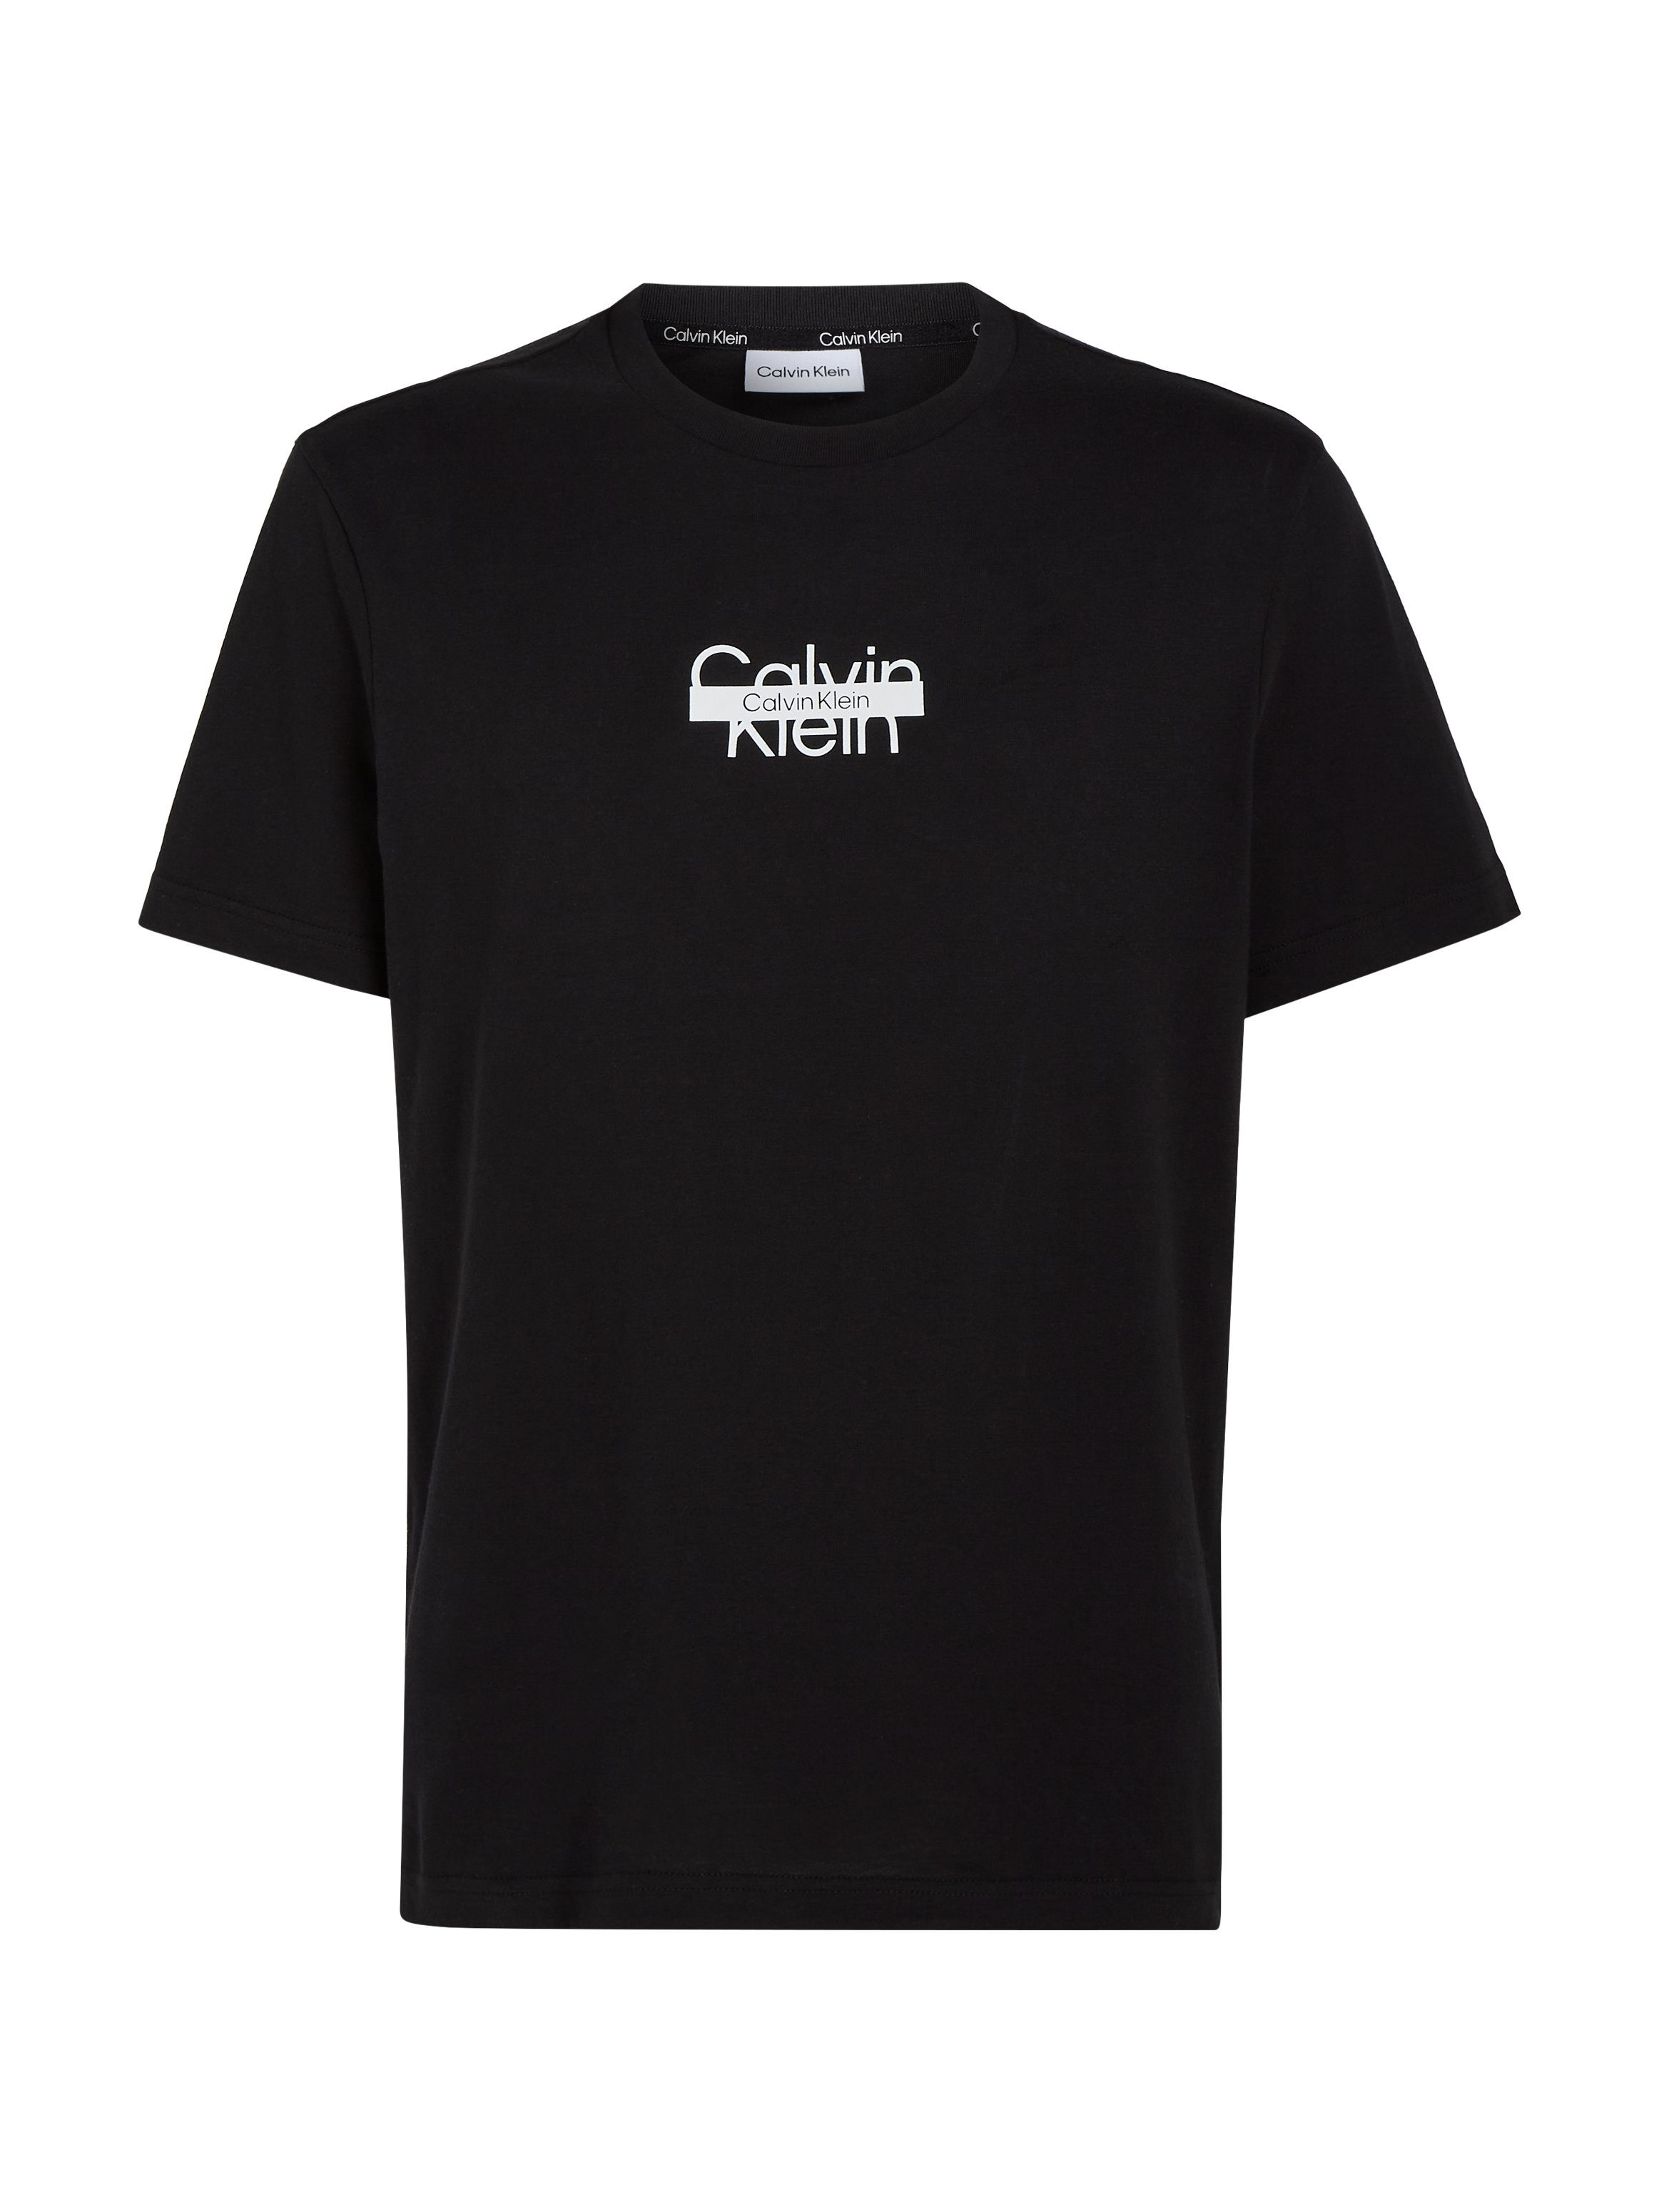 THROUGH T-Shirt CUT T-SHIRT Calvin Klein Ck Black LOGO